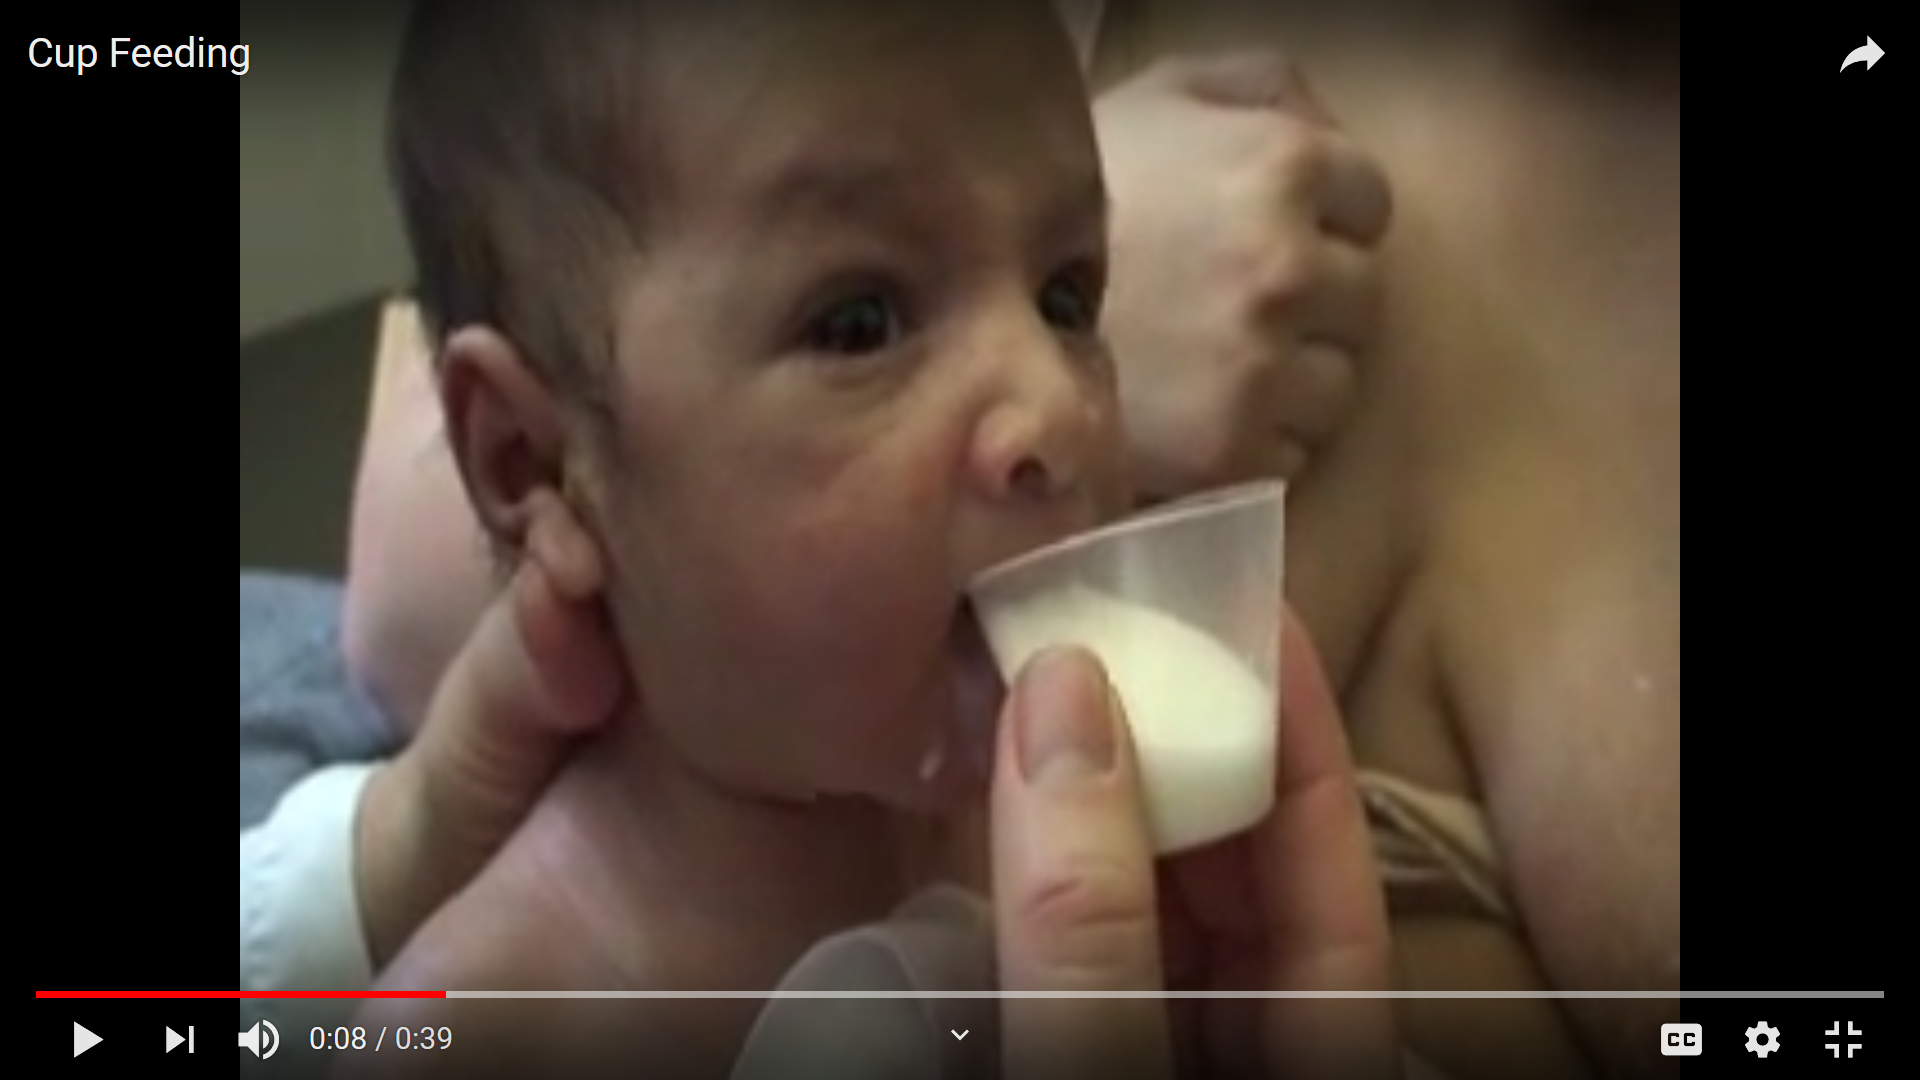 Cup Feeding (Breastfeeding Inc)